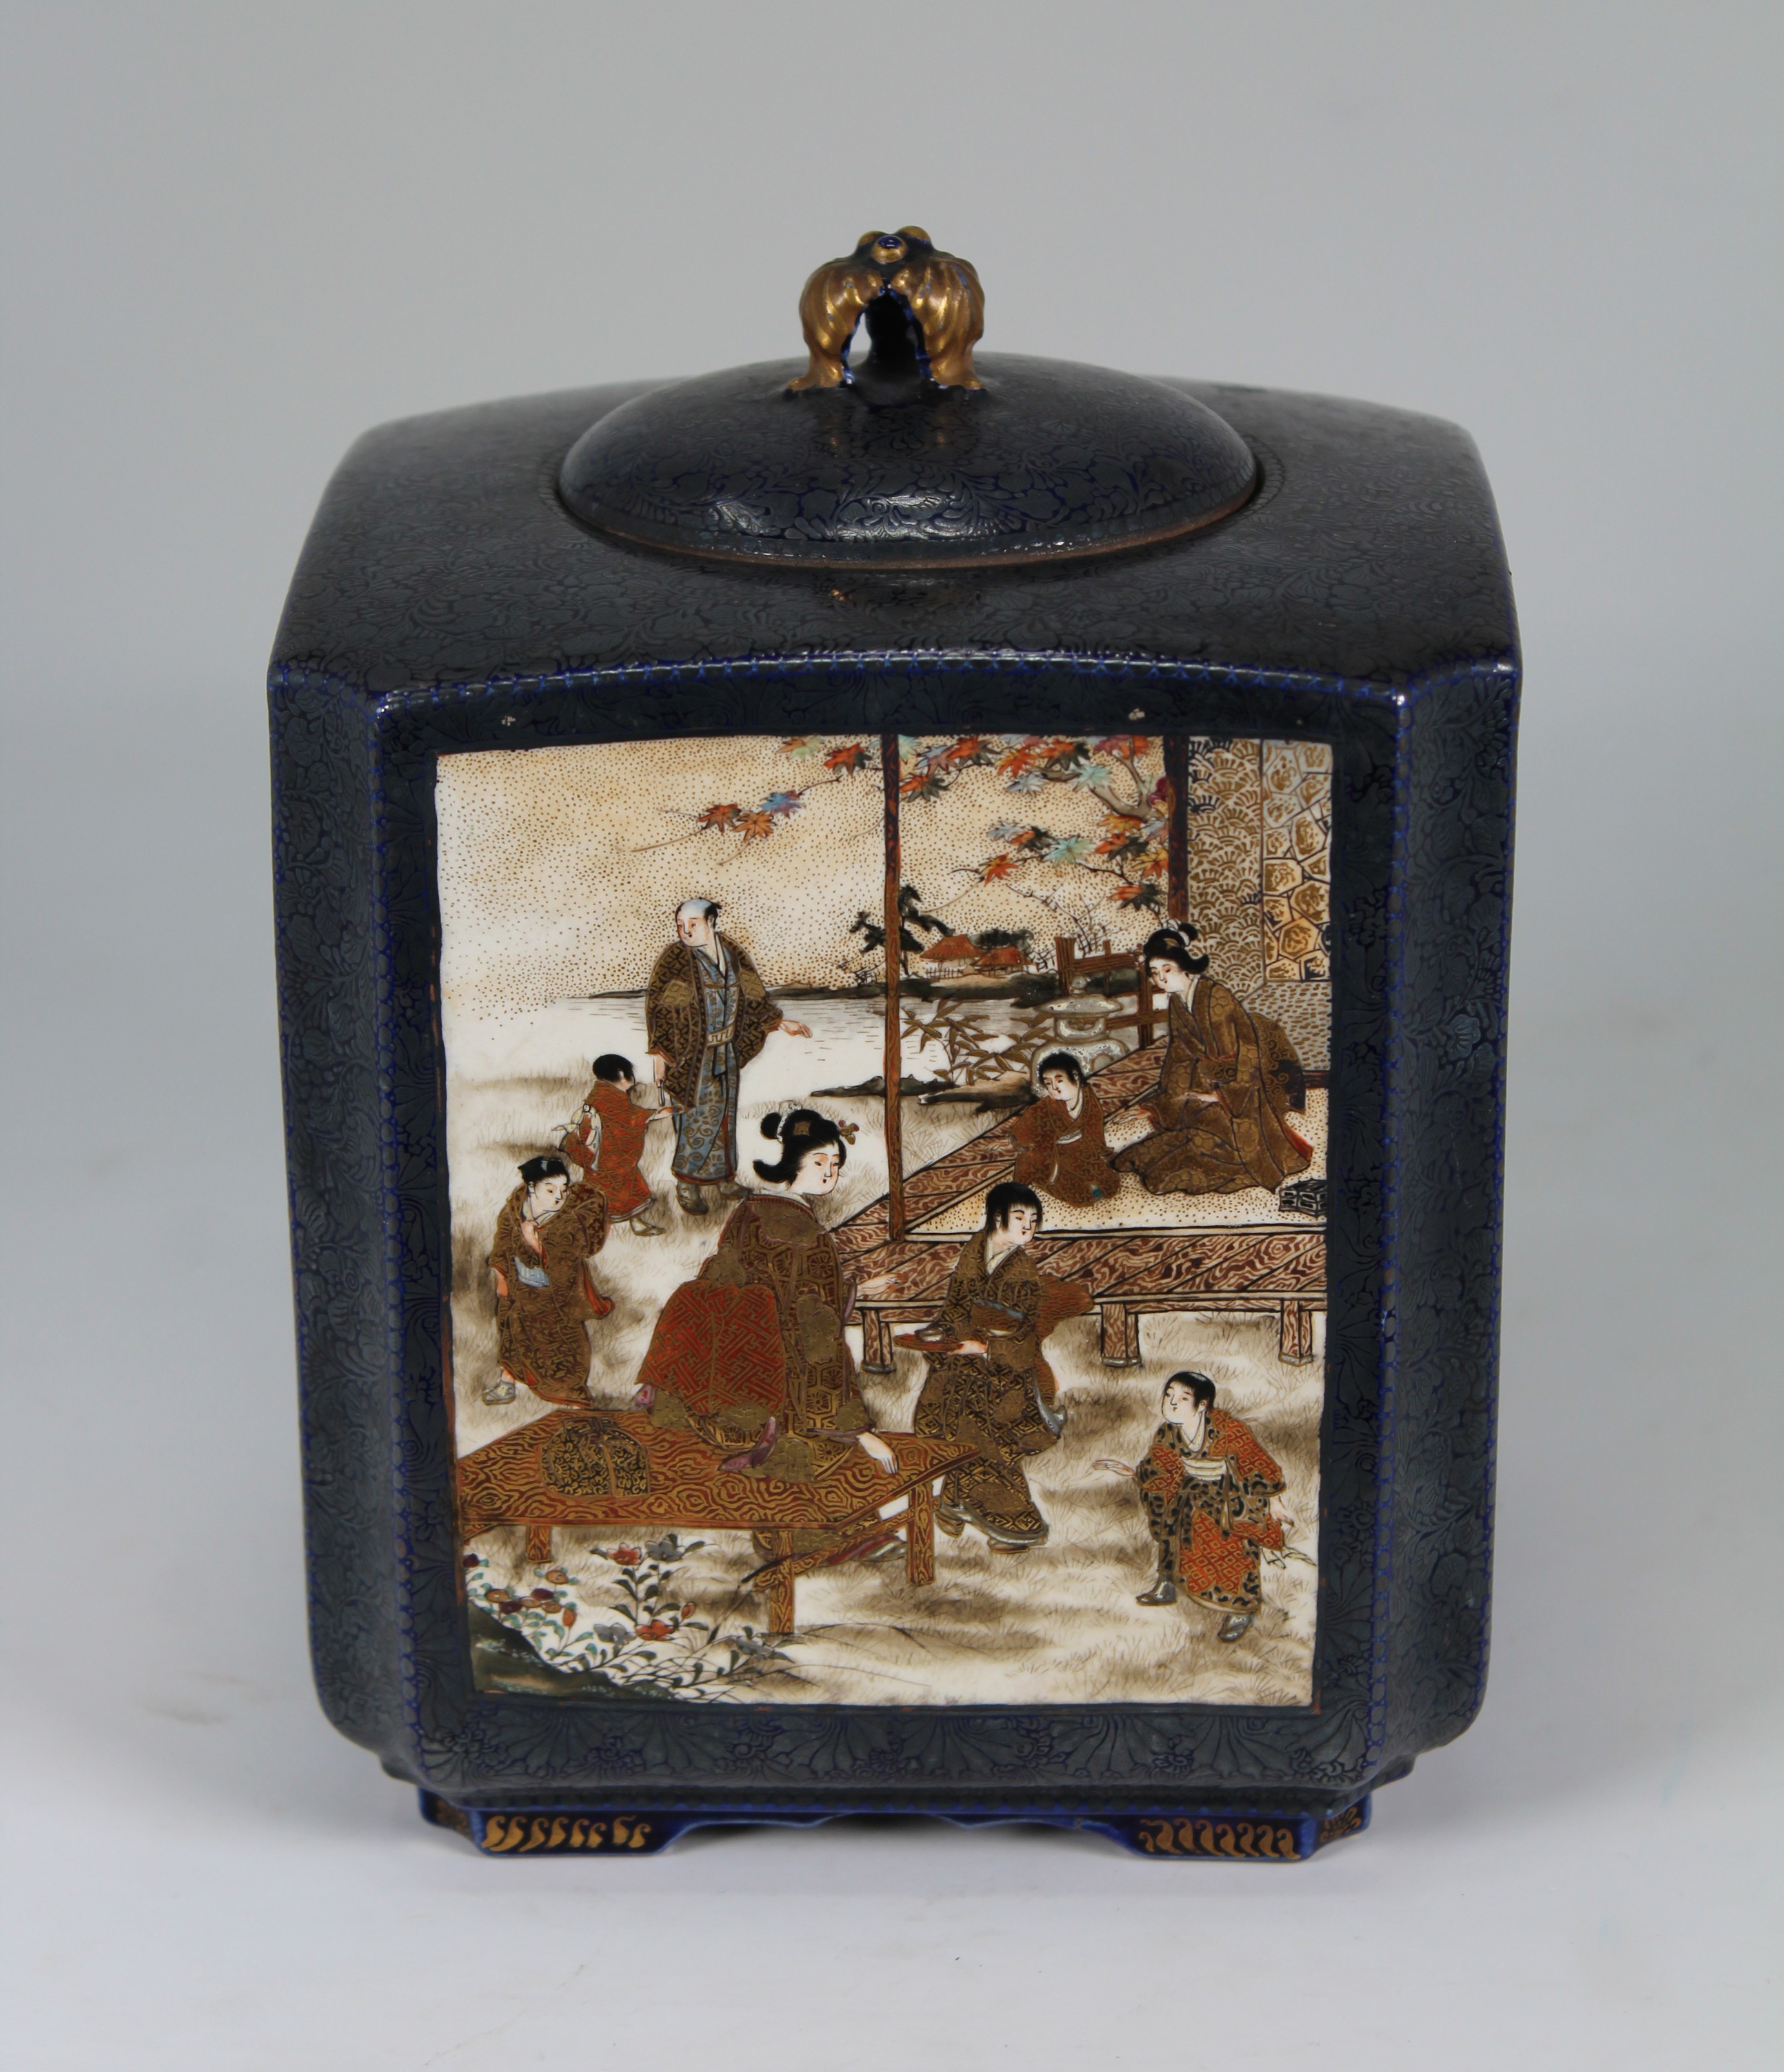 Kinkozan, Signed Japanese Meiji Period Satsuma Porcelain Vase. Signed on base. With all four sides